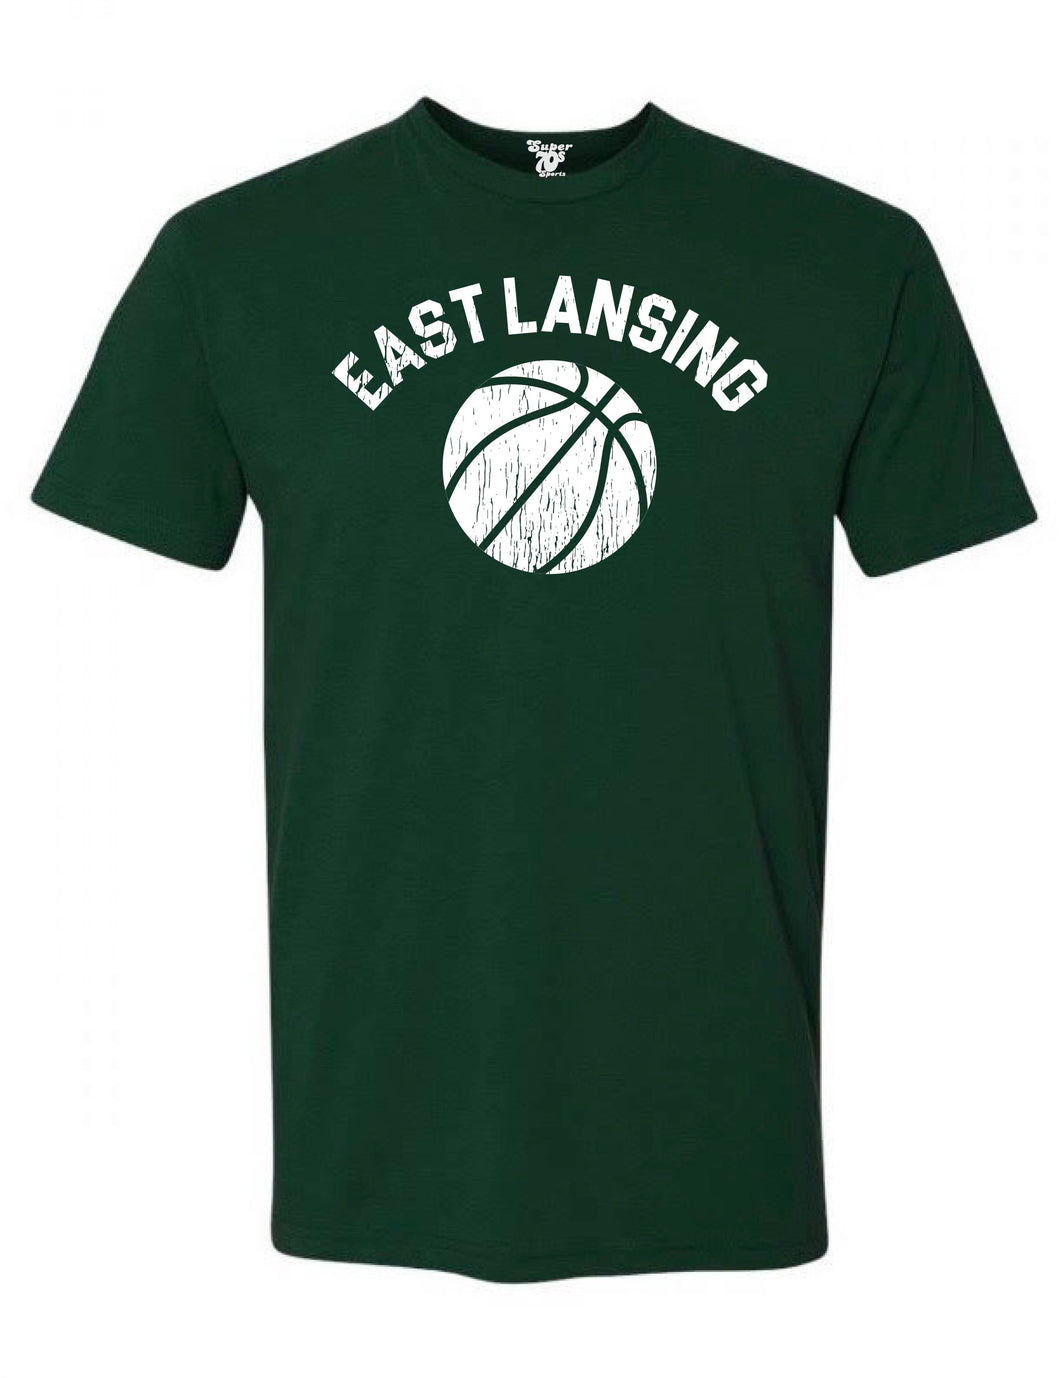 East Lansing Basketball Tee